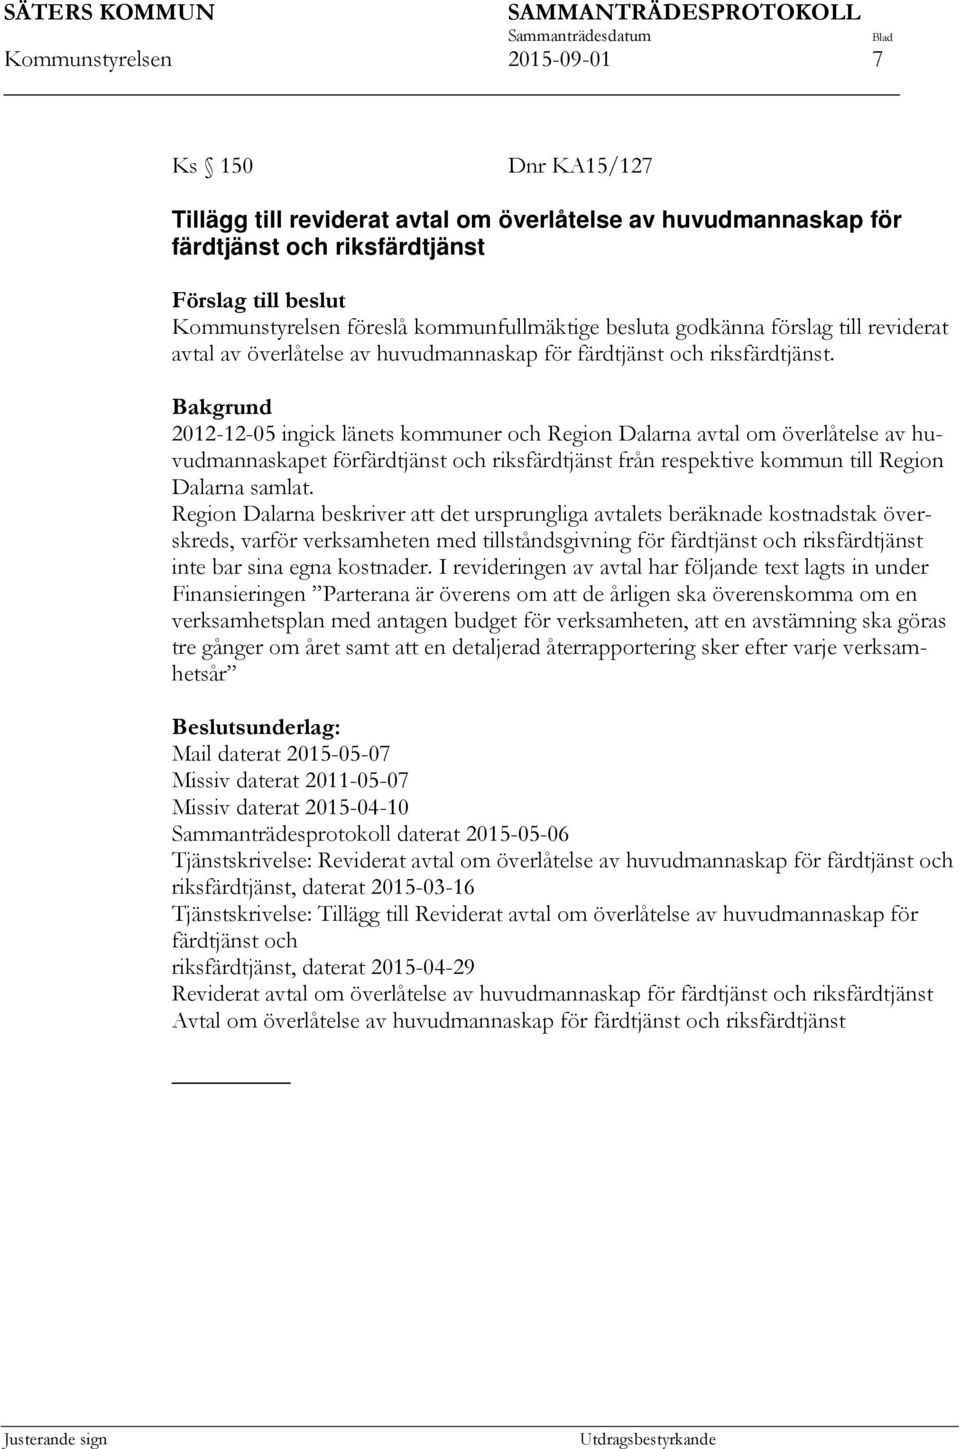 Bakgrund 2012-12-05 ingick länets kommuner och Region Dalarna avtal om överlåtelse av huvudmannaskapet förfärdtjänst och riksfärdtjänst från respektive kommun till Region Dalarna samlat.